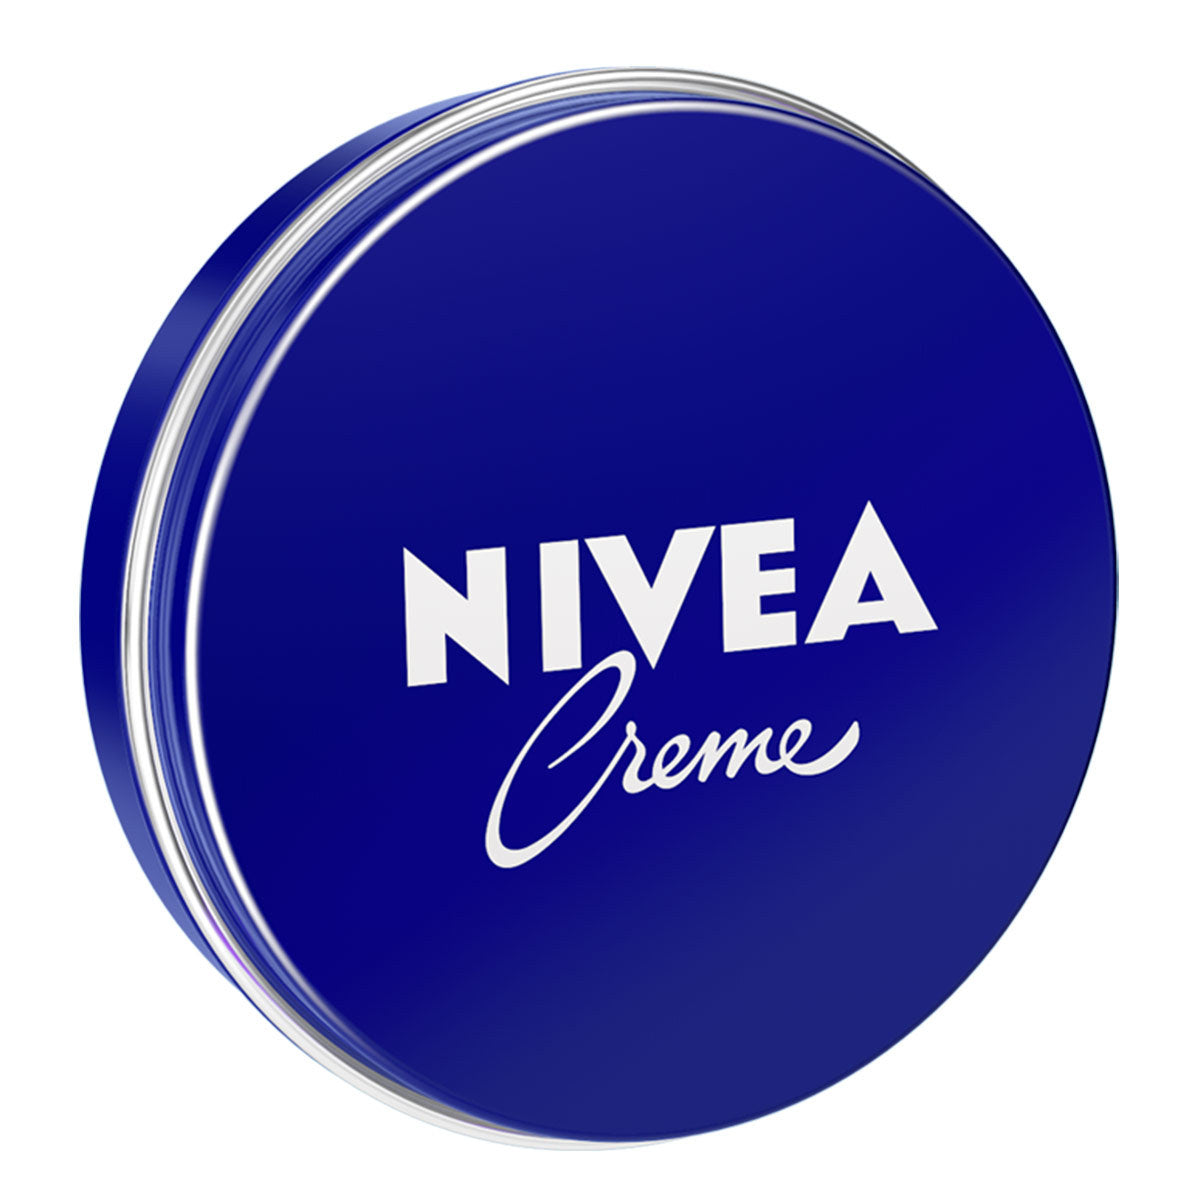 Primary image of Nivea Creme